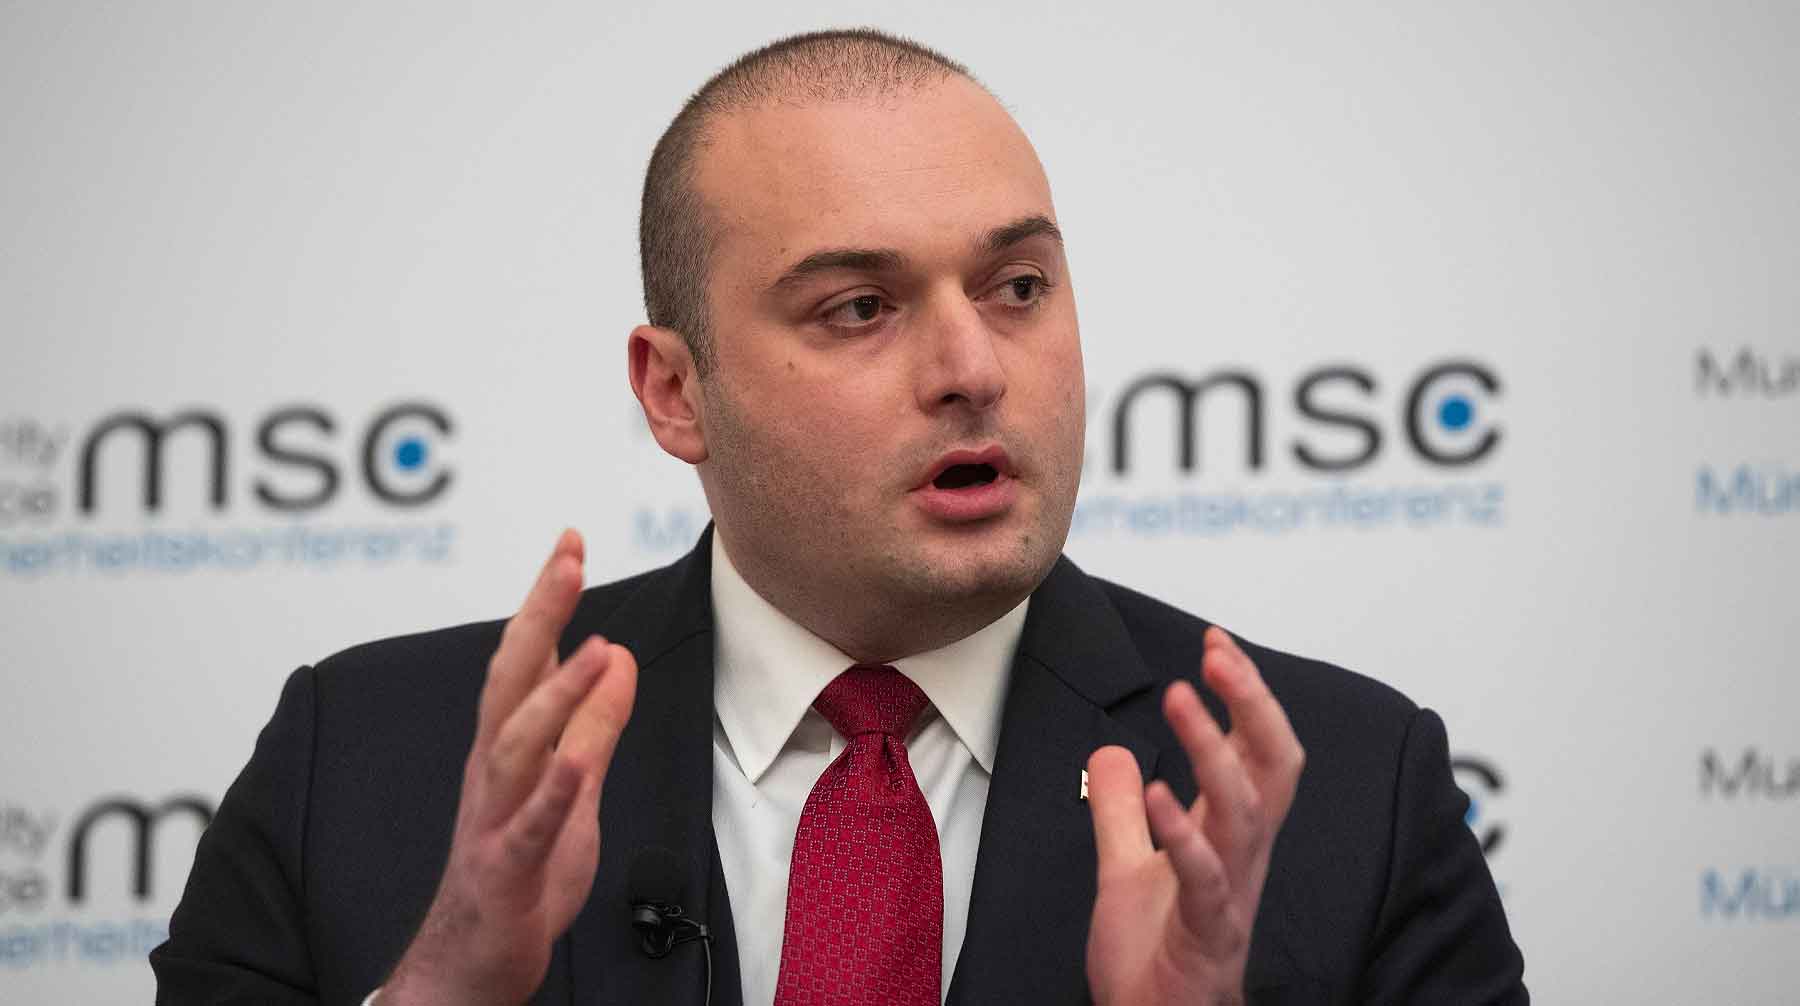 Политик призвал провести выборы в следующем году без лозунгов ненависти Мамука Бахтадзе